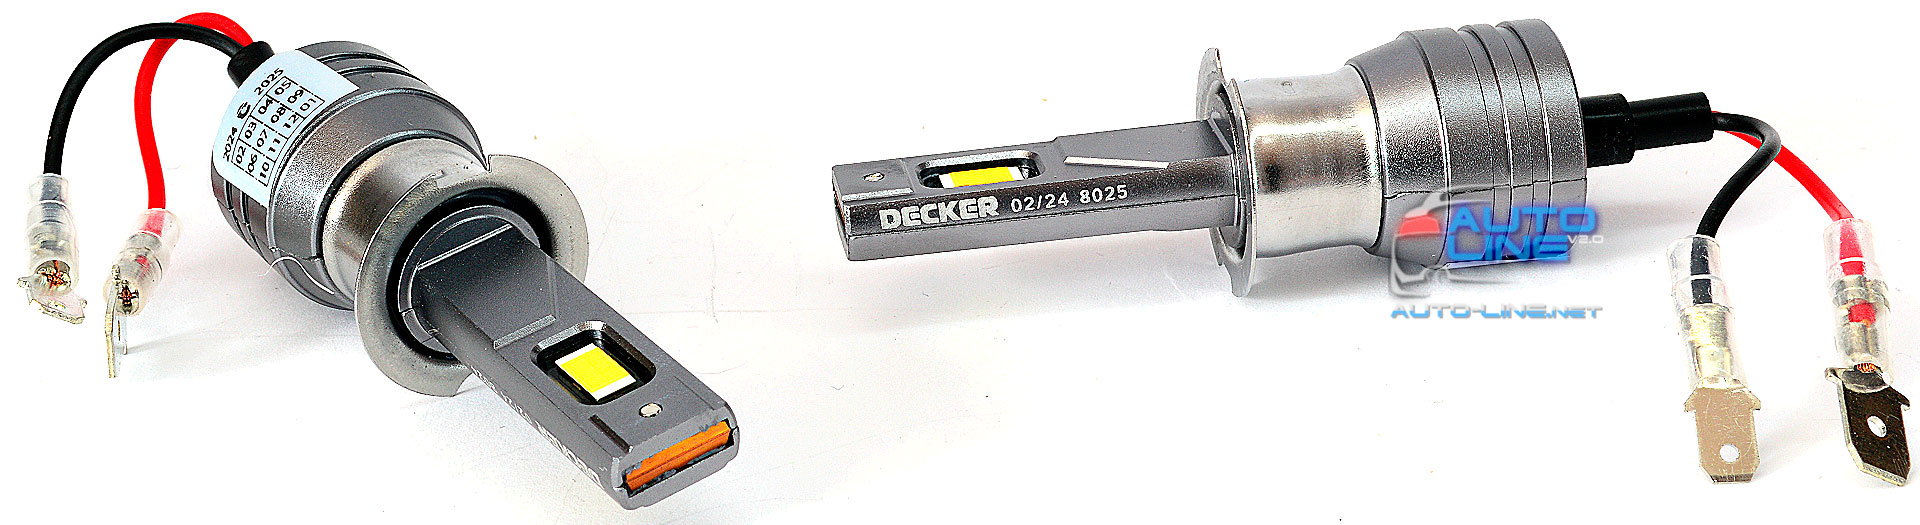 Decker LED PL-05 5K H3 — автомобильная LED-лампа H3 под галогенку, без вентилятора